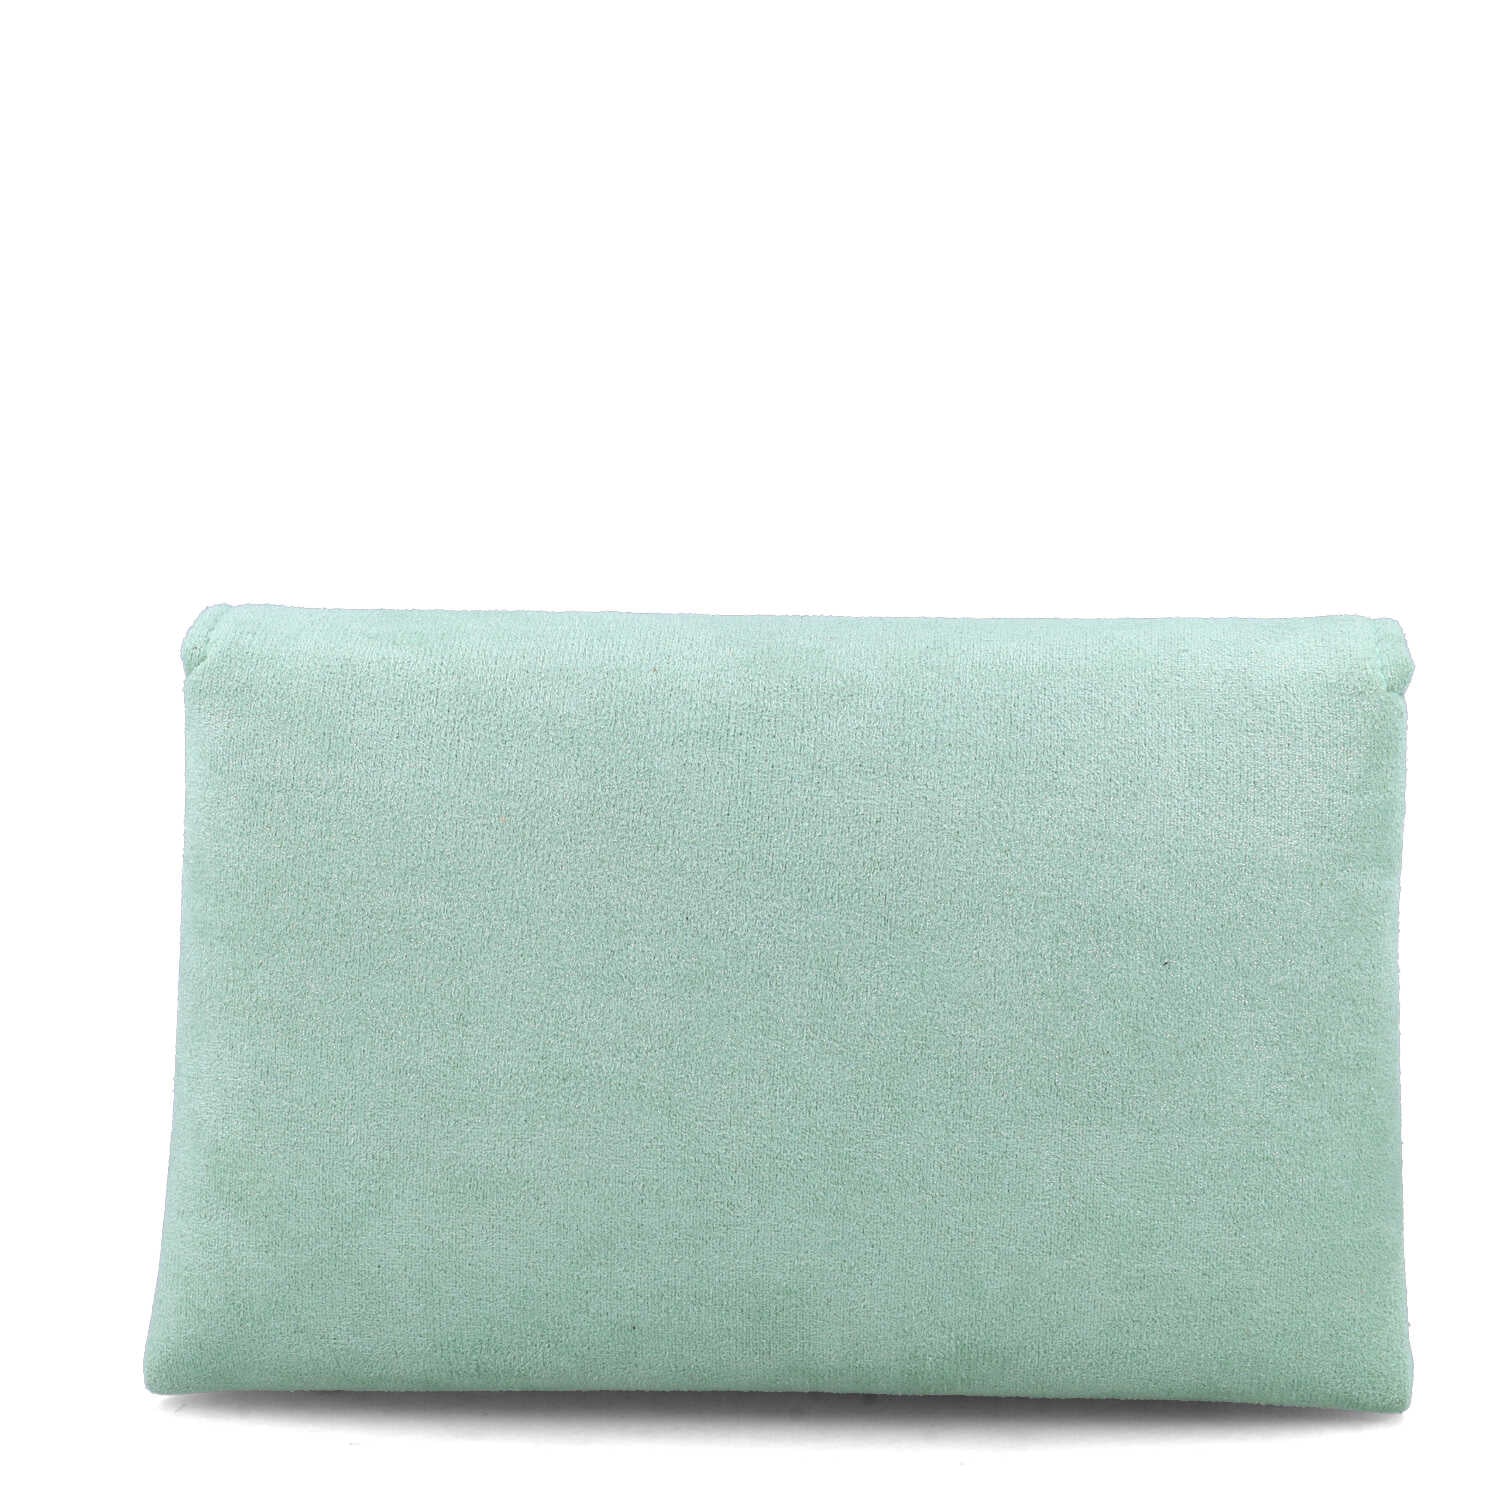 Green Embellished Clutch Bag